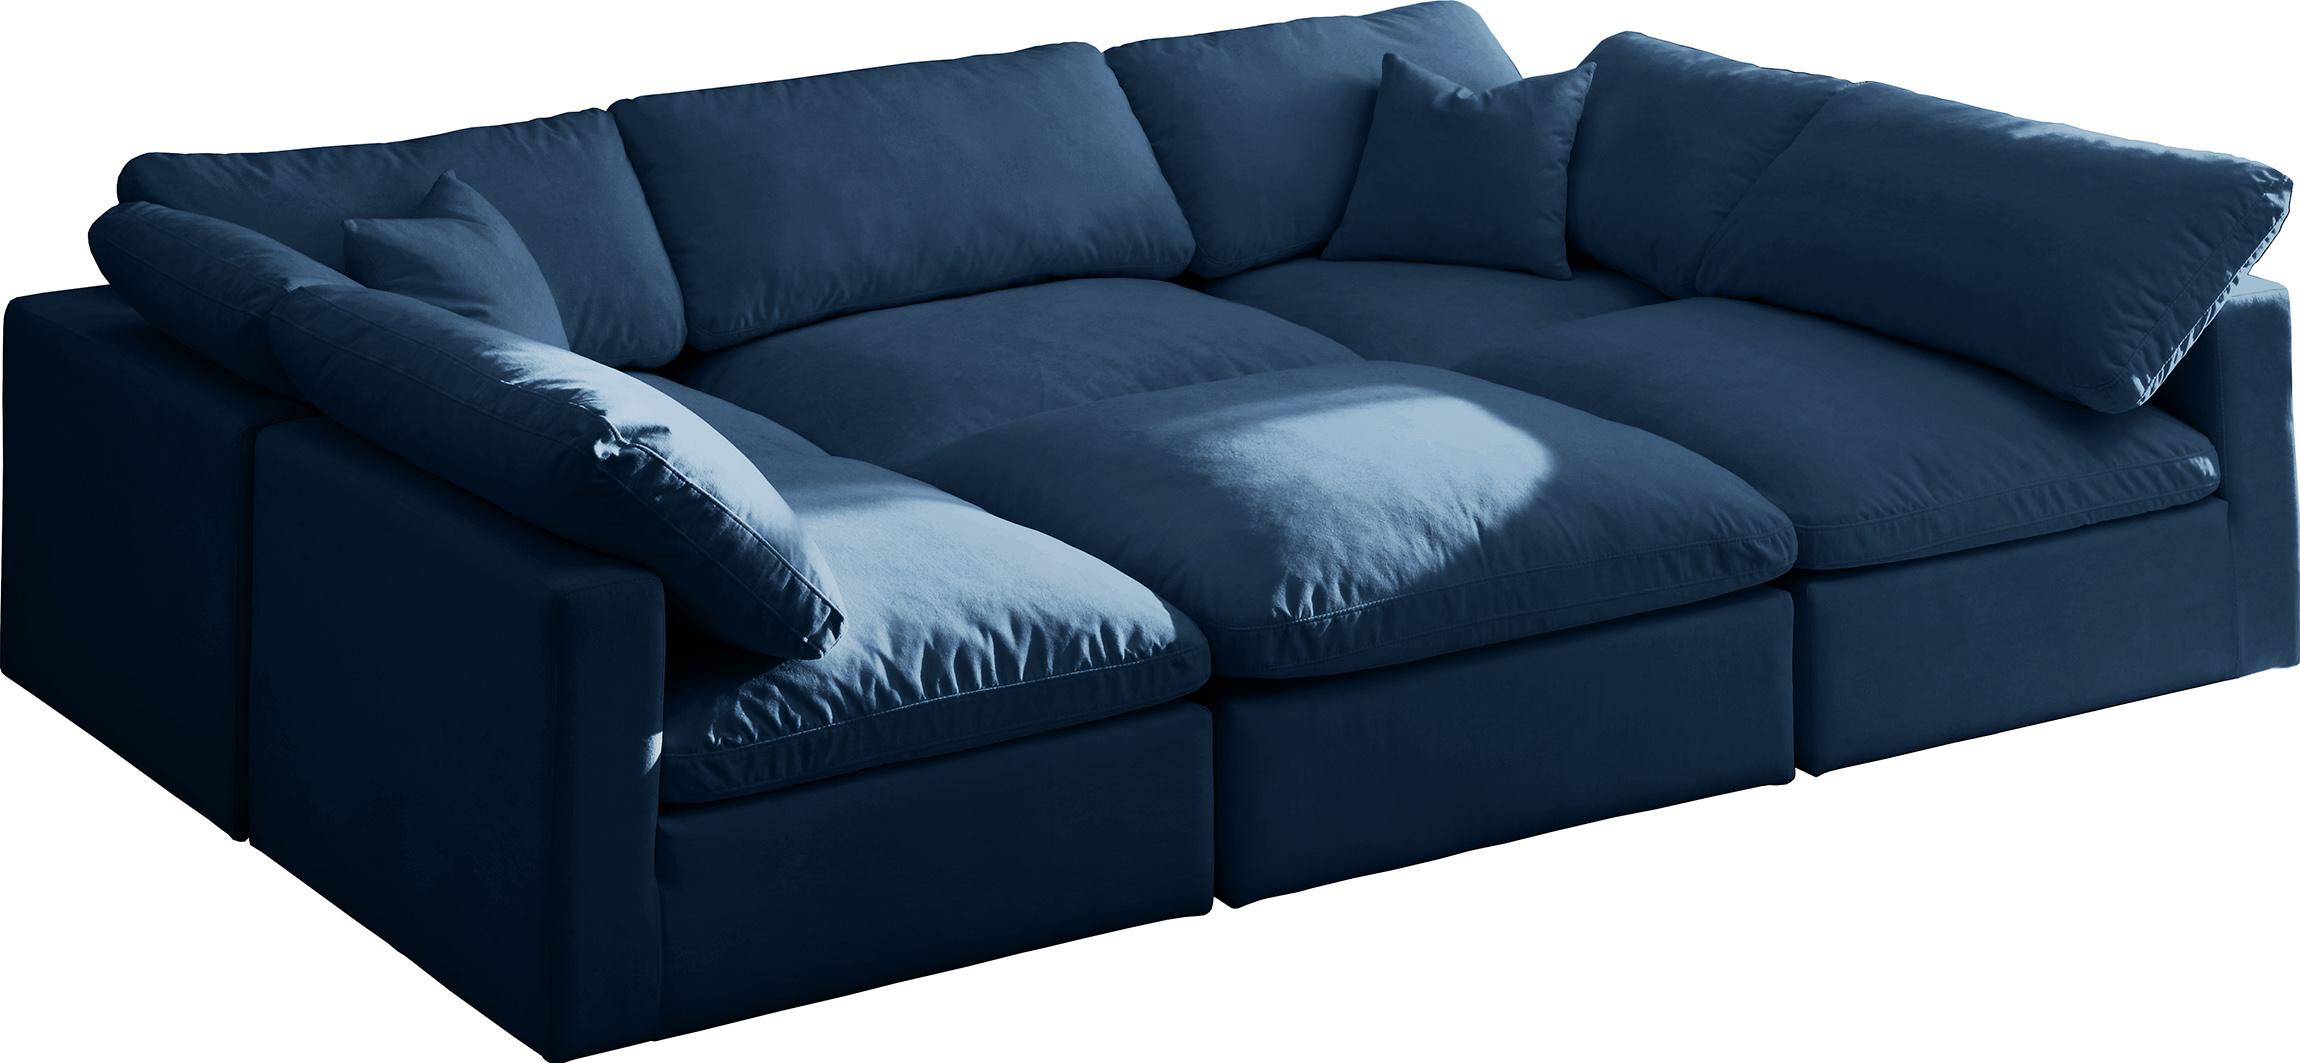 Soflex Cloud NAVY Modular Sectional Sofa